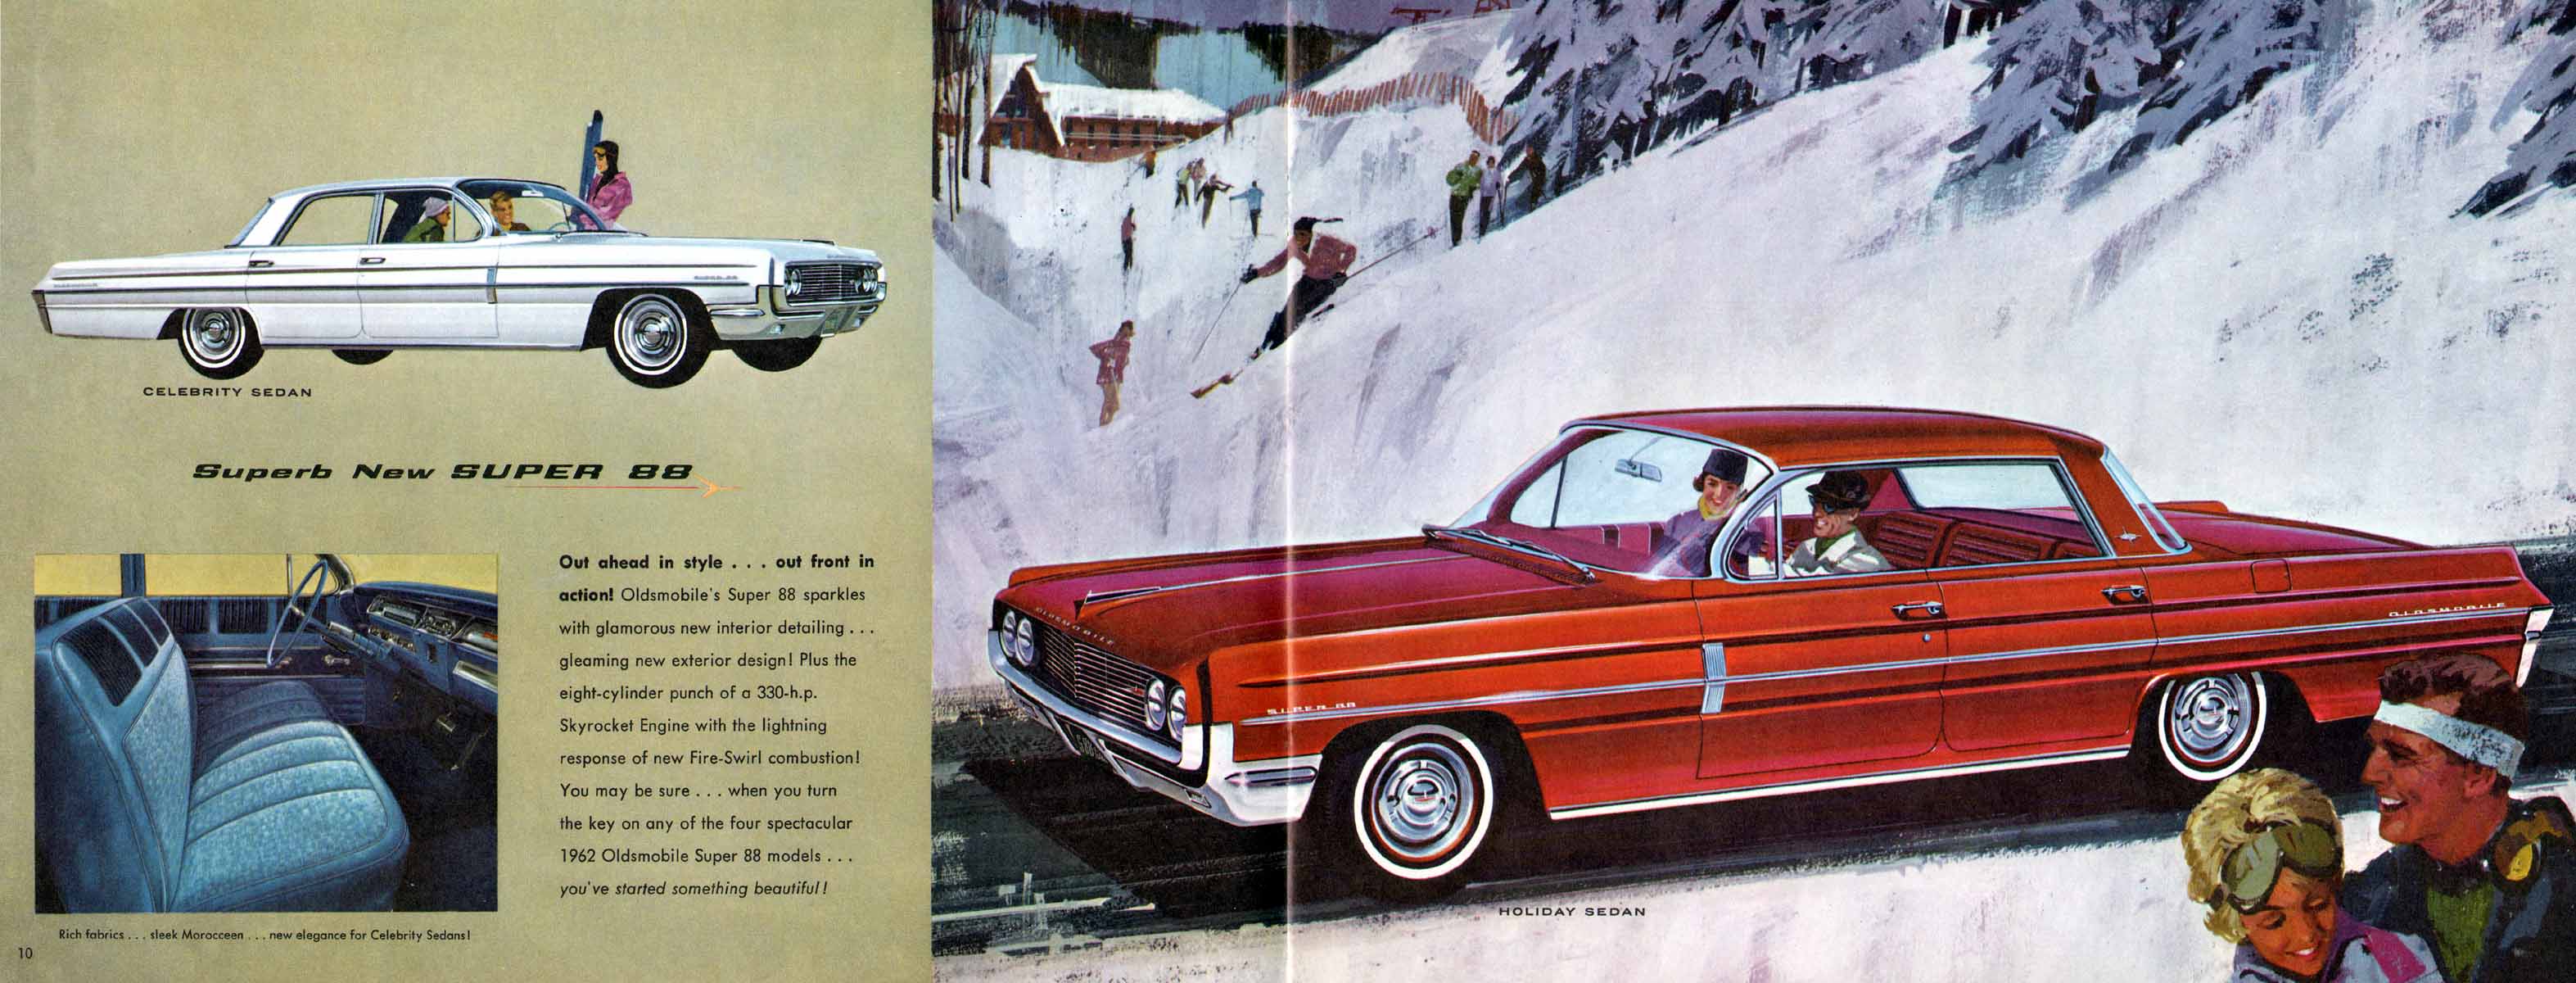 1962_Oldsmobile_Full_Line-12-13